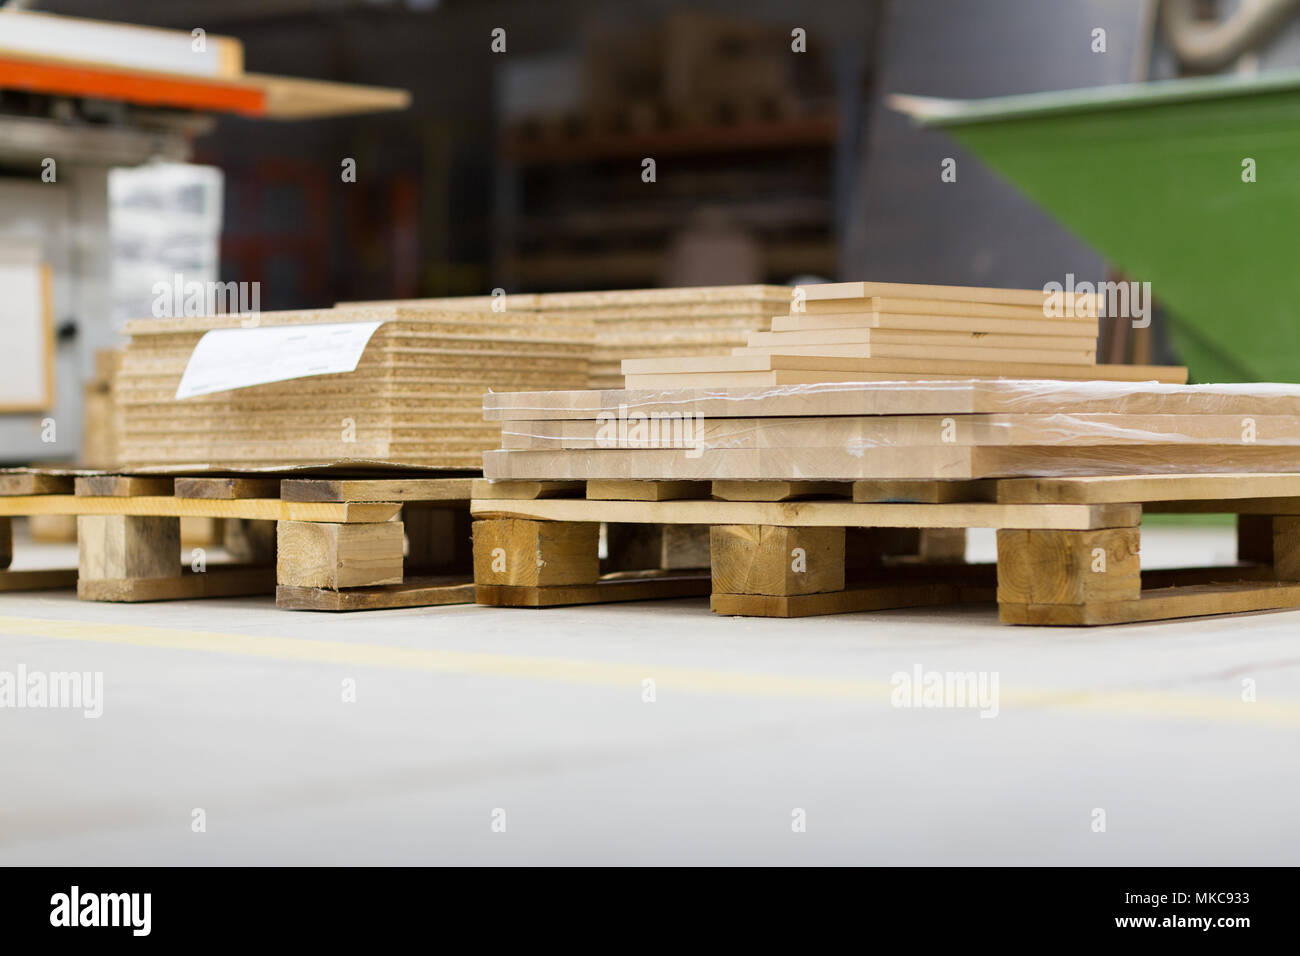 Les planches de bois et panneaux de stockage à l'usine Banque D'Images